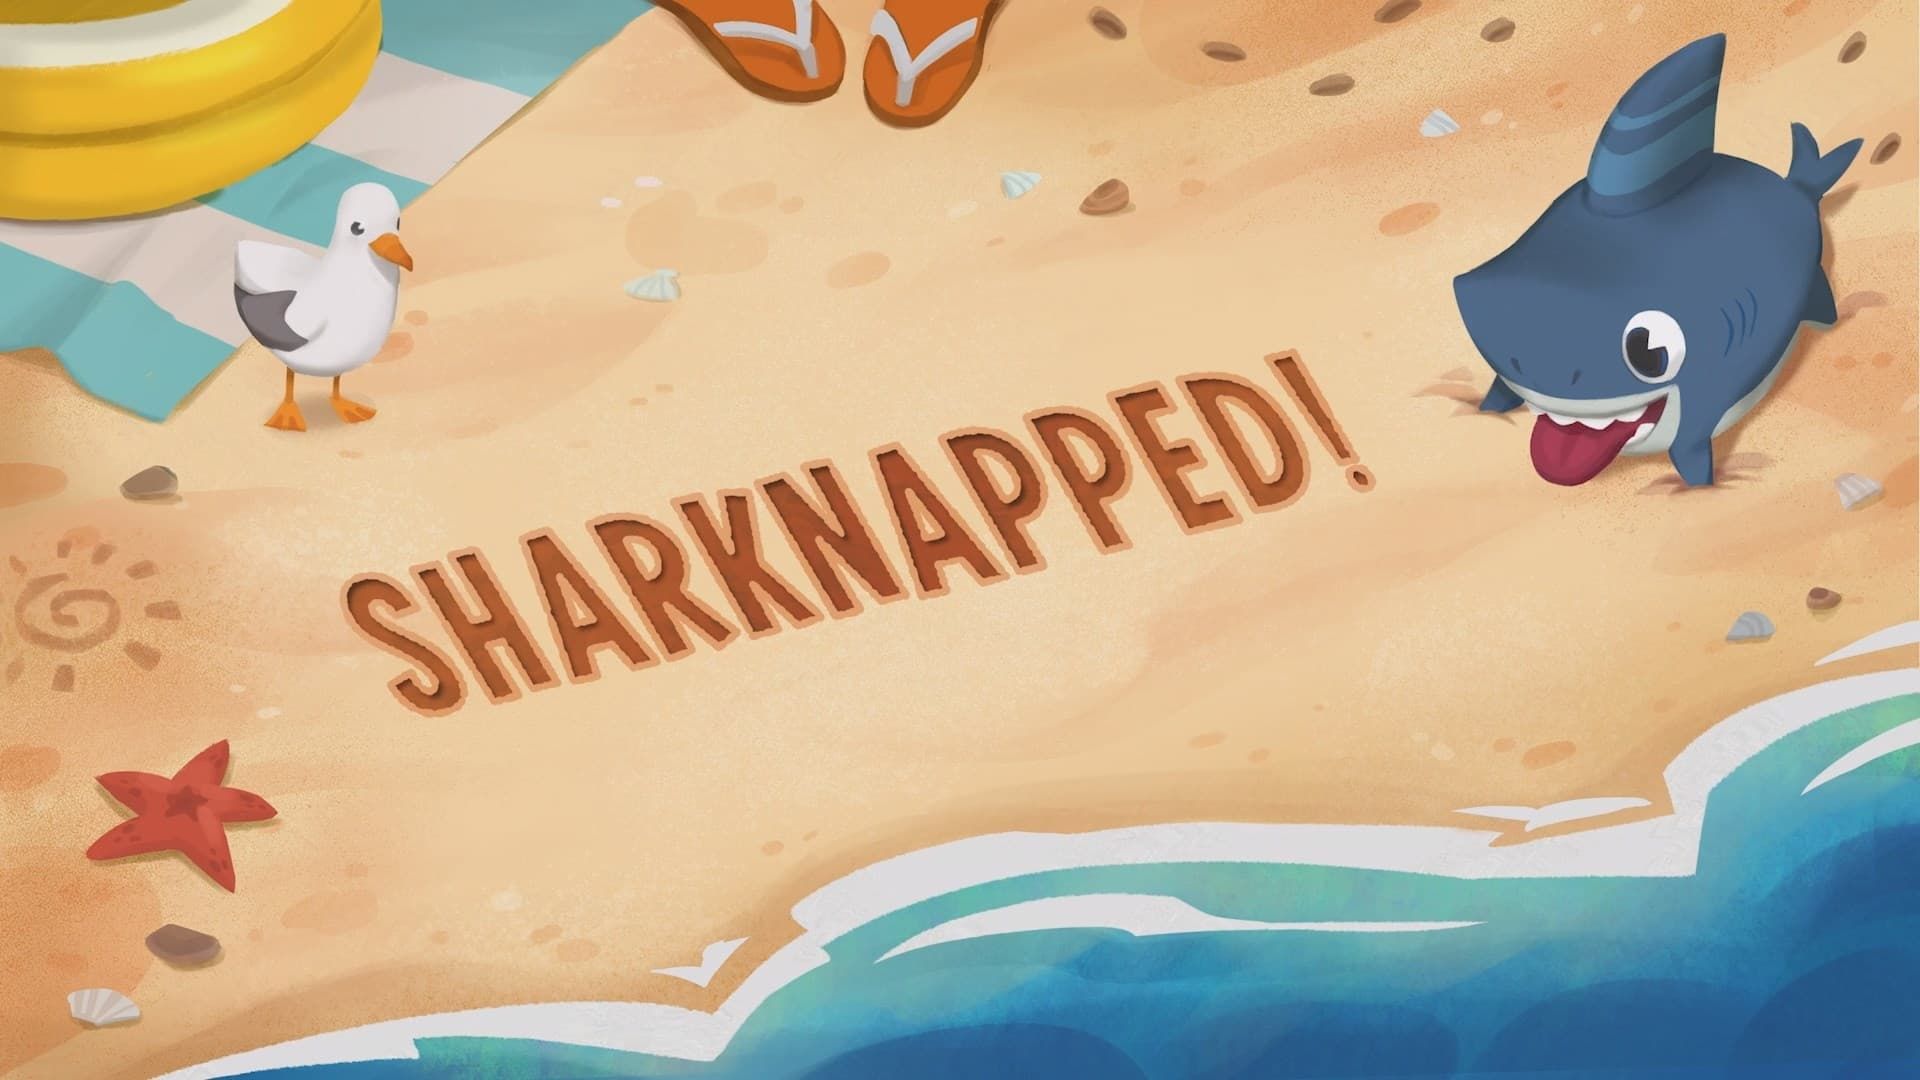 Sharkdog background